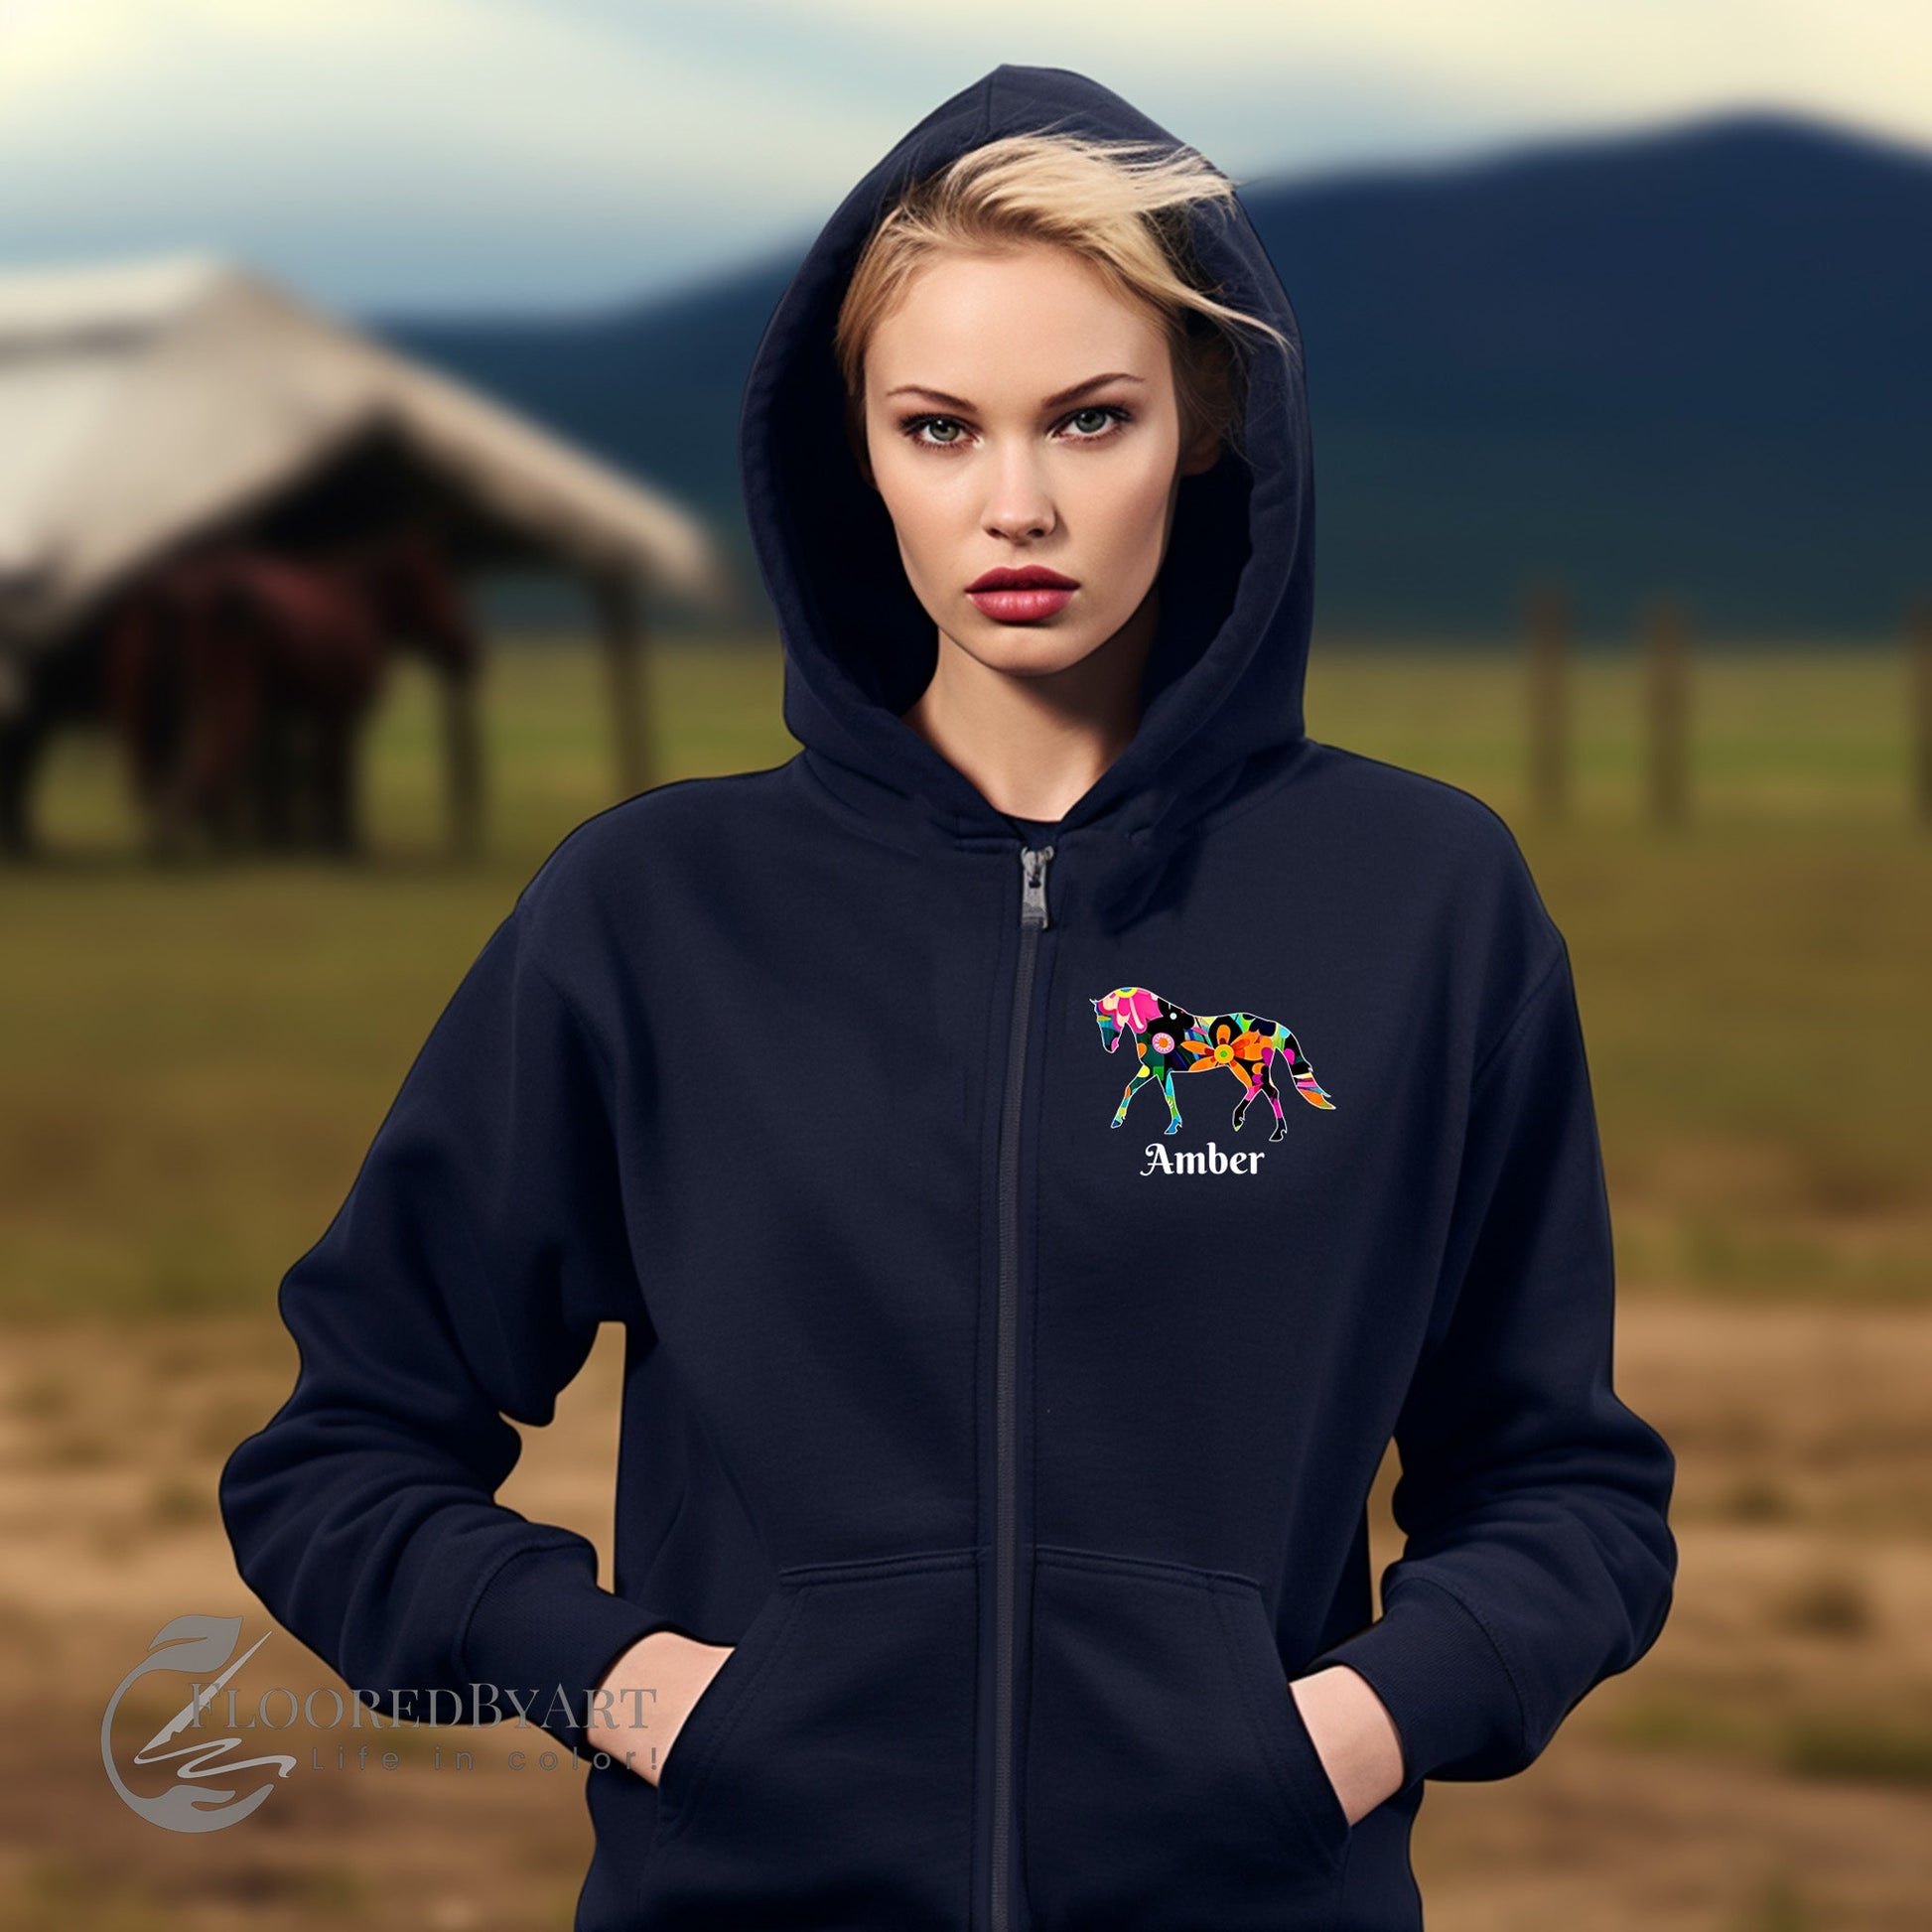 Personalized Ladies Horse Full Zip Hoodie Jacket, Bright Floral Horse Pattern - FlooredByArt